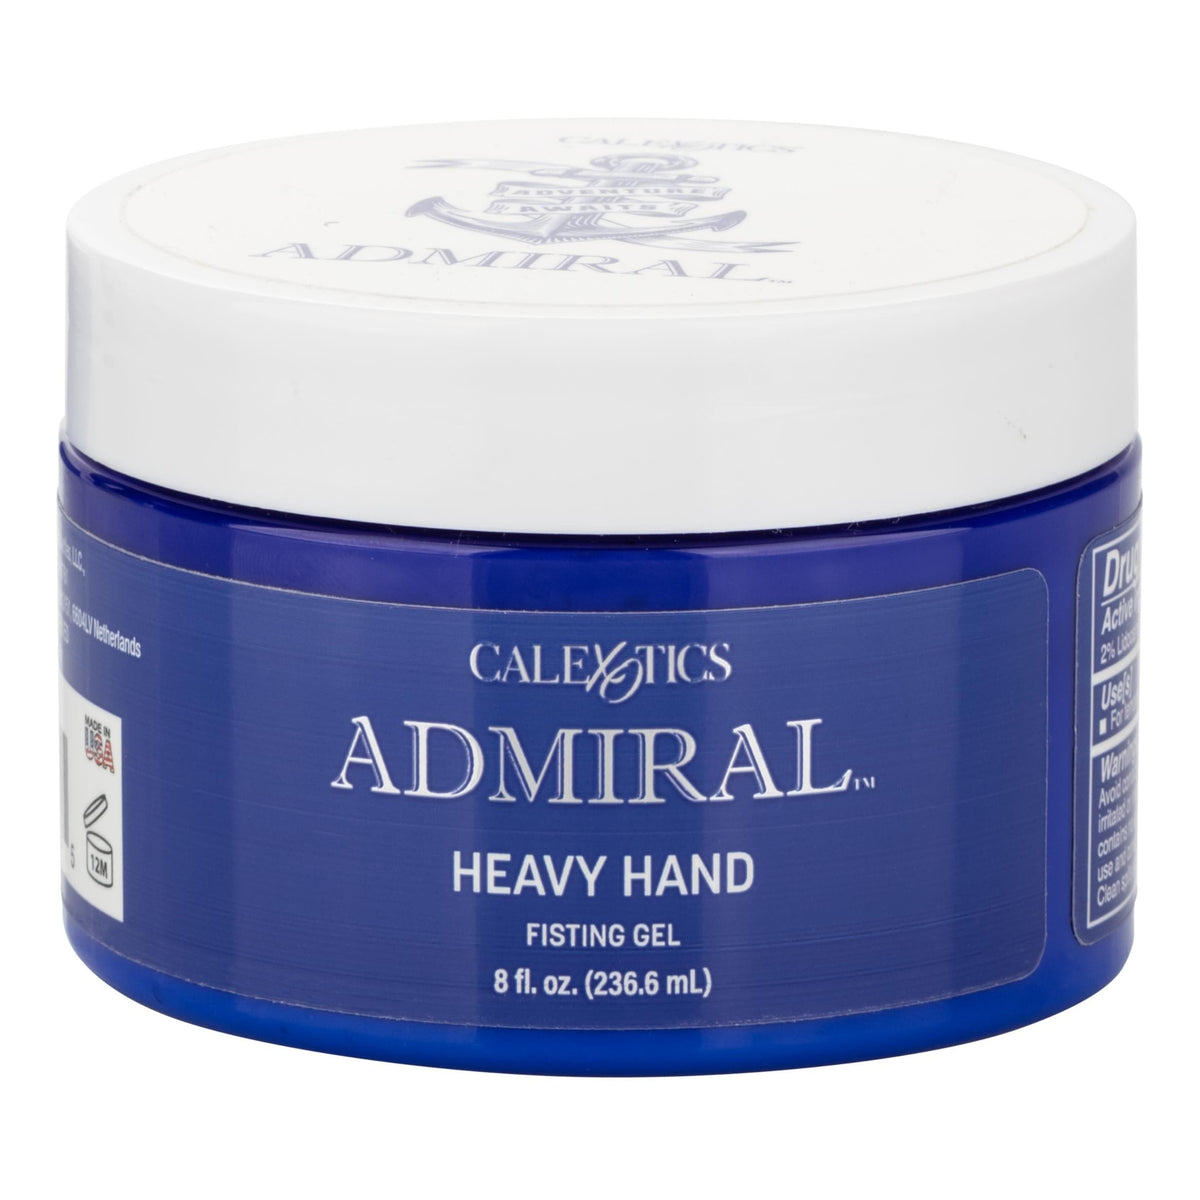 admiral heavy hand fisting gel 8 fl oz